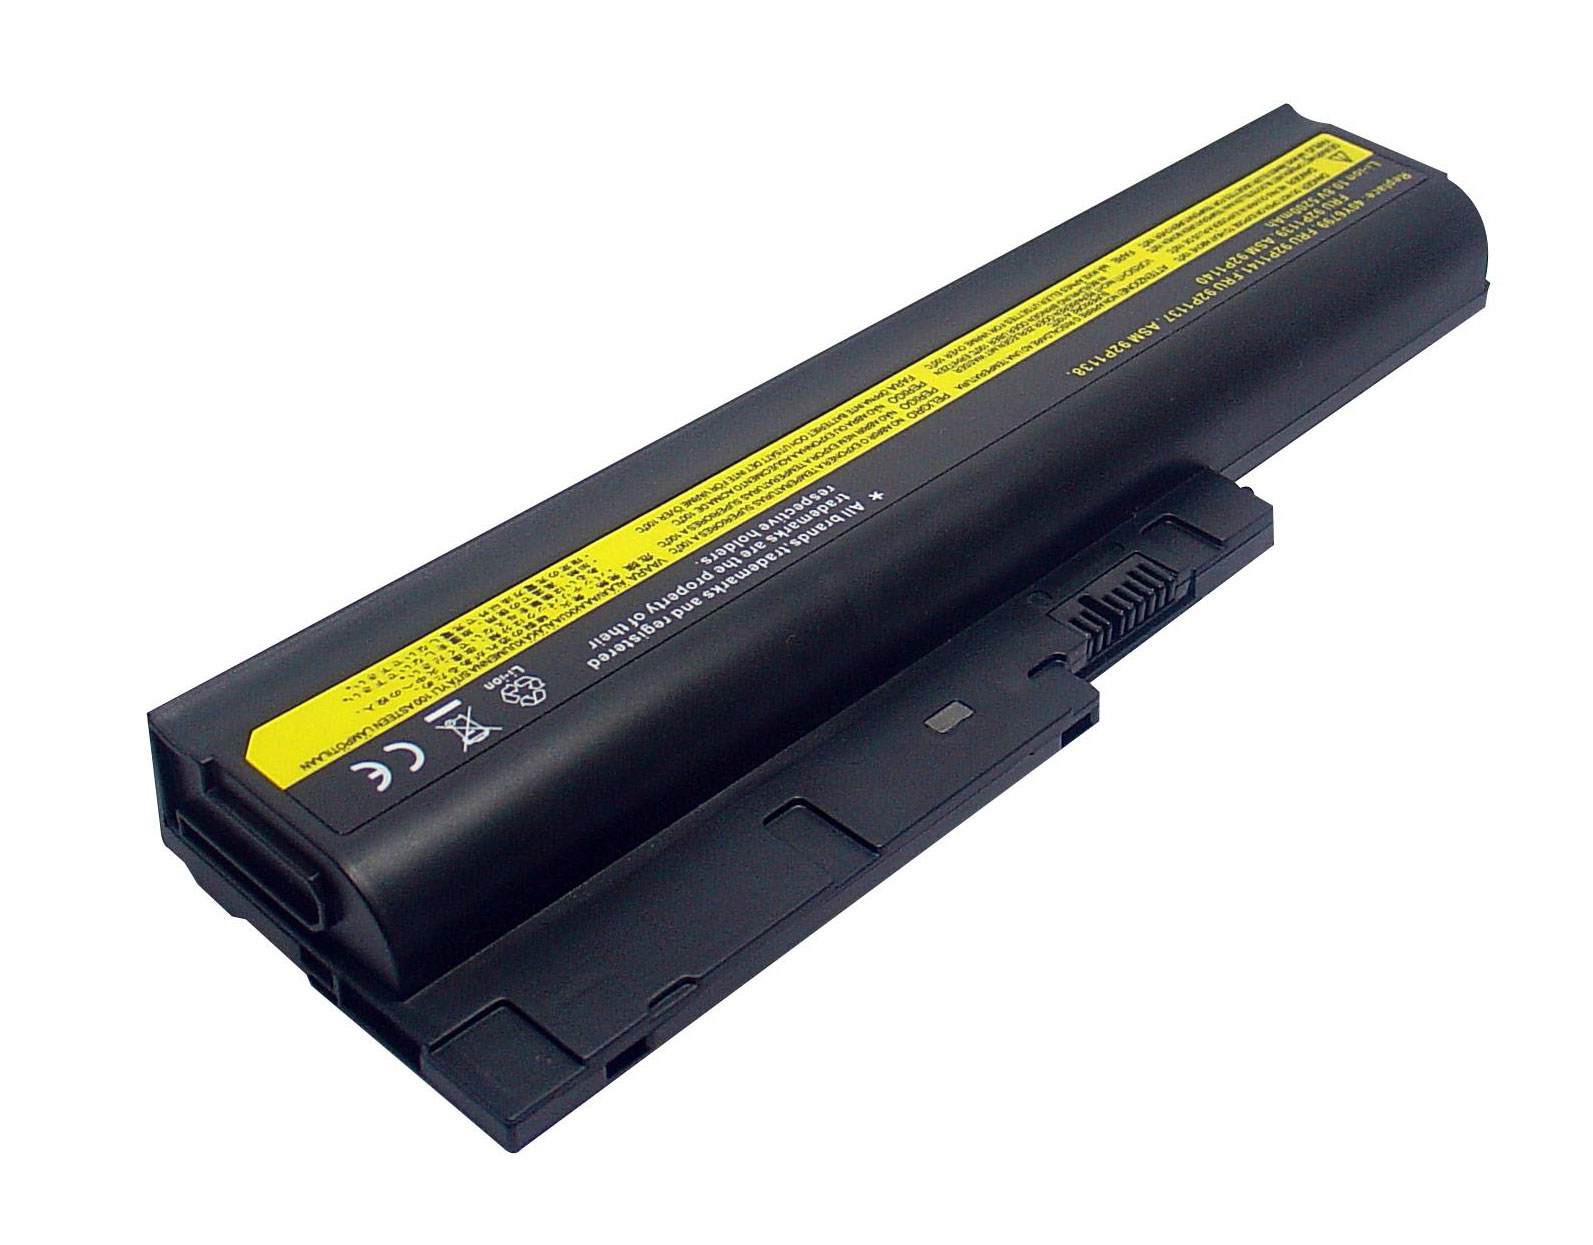 Ibm 40y6799, Asm 92p1138 Laptop Batteries For Thinkpad R60 0656, Thinkpad R60 0657 replacement